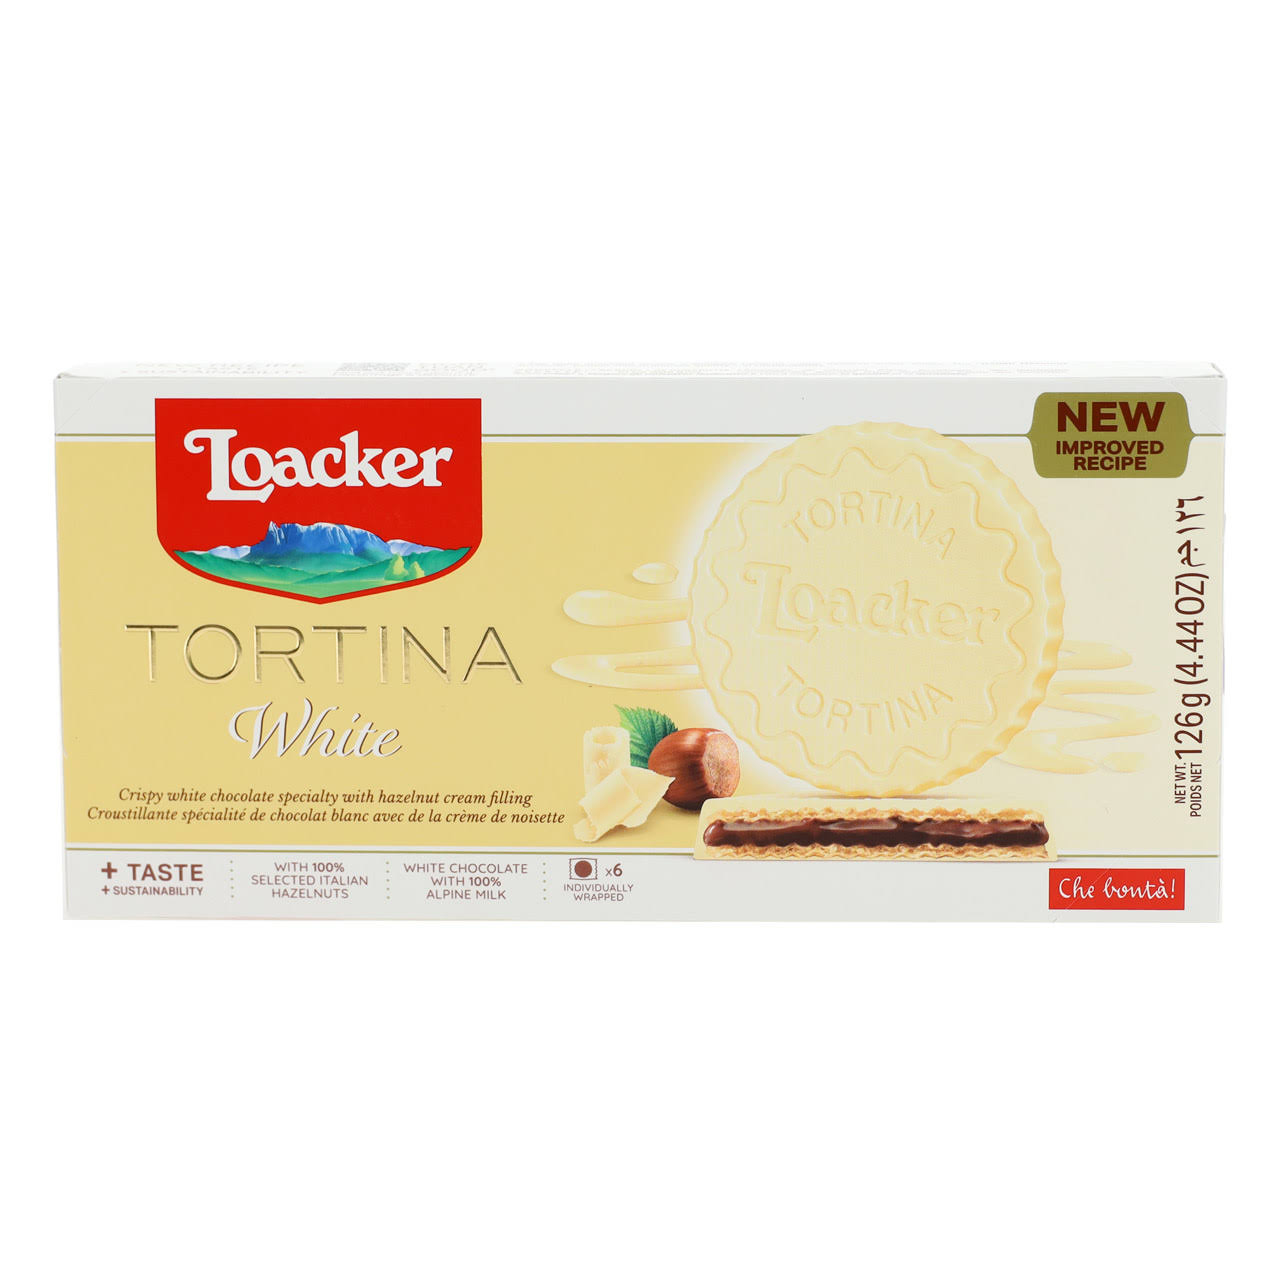 Loacker Gran Pasticceria Tortina White 125g4.41 Oz